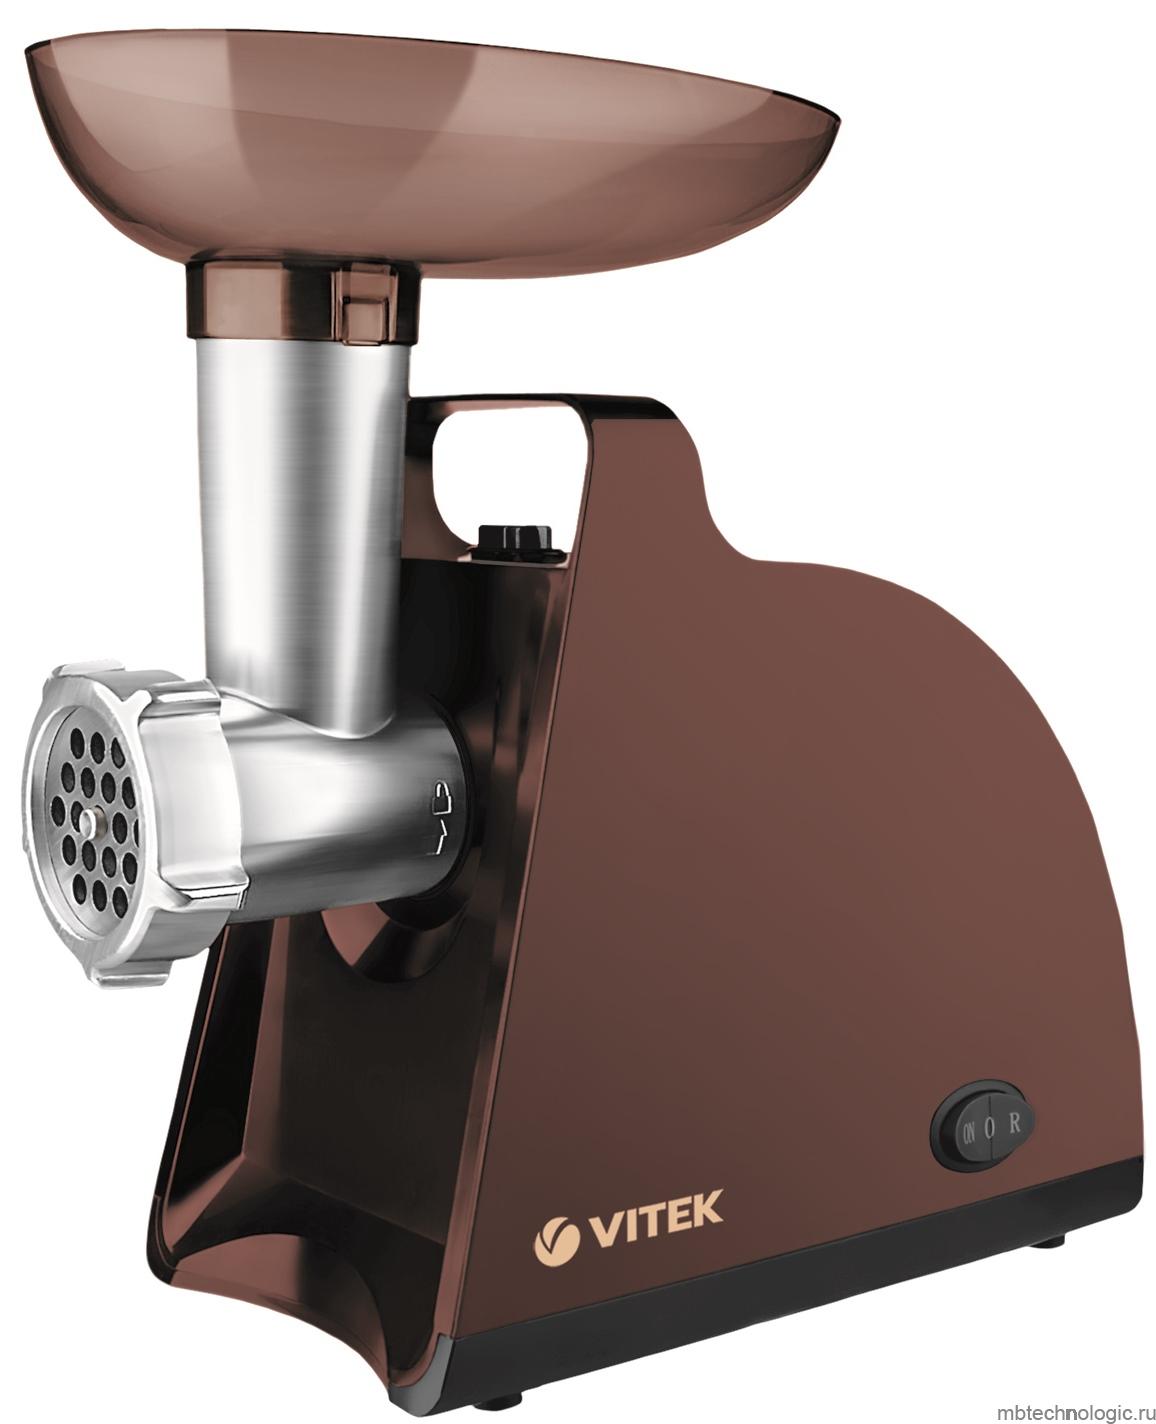 VITEK VT-3613